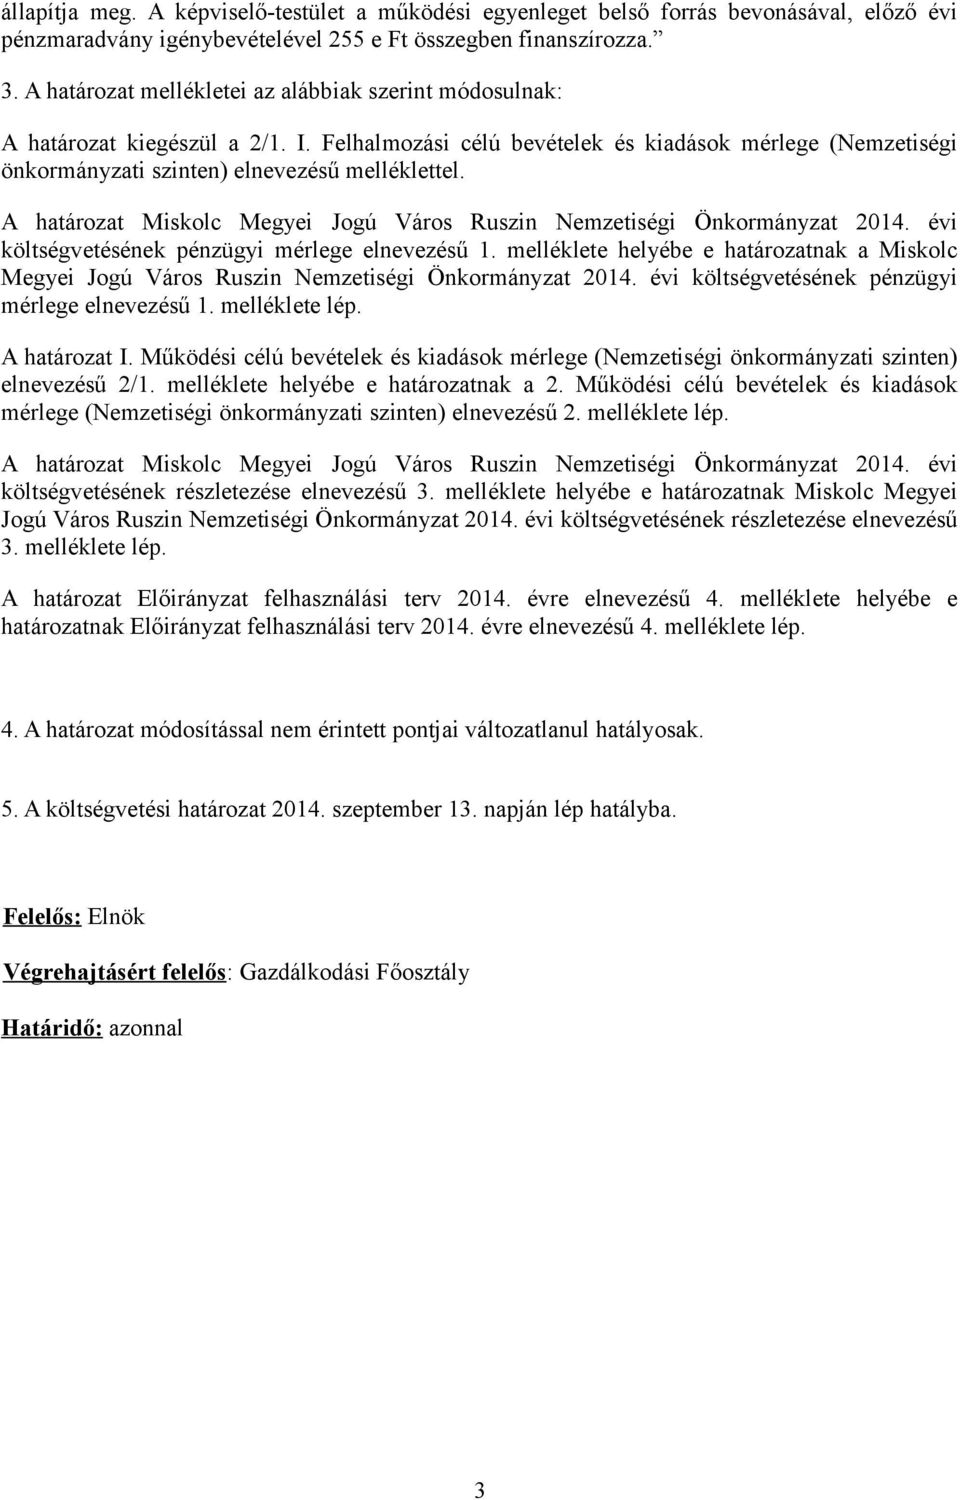 A határozat Miskolc Megyei Jogú Város Ruszin Nemzetiségi Önkormányzat 2014. évi költségvetésének pénzügyi mérlege elnevezésű 1.